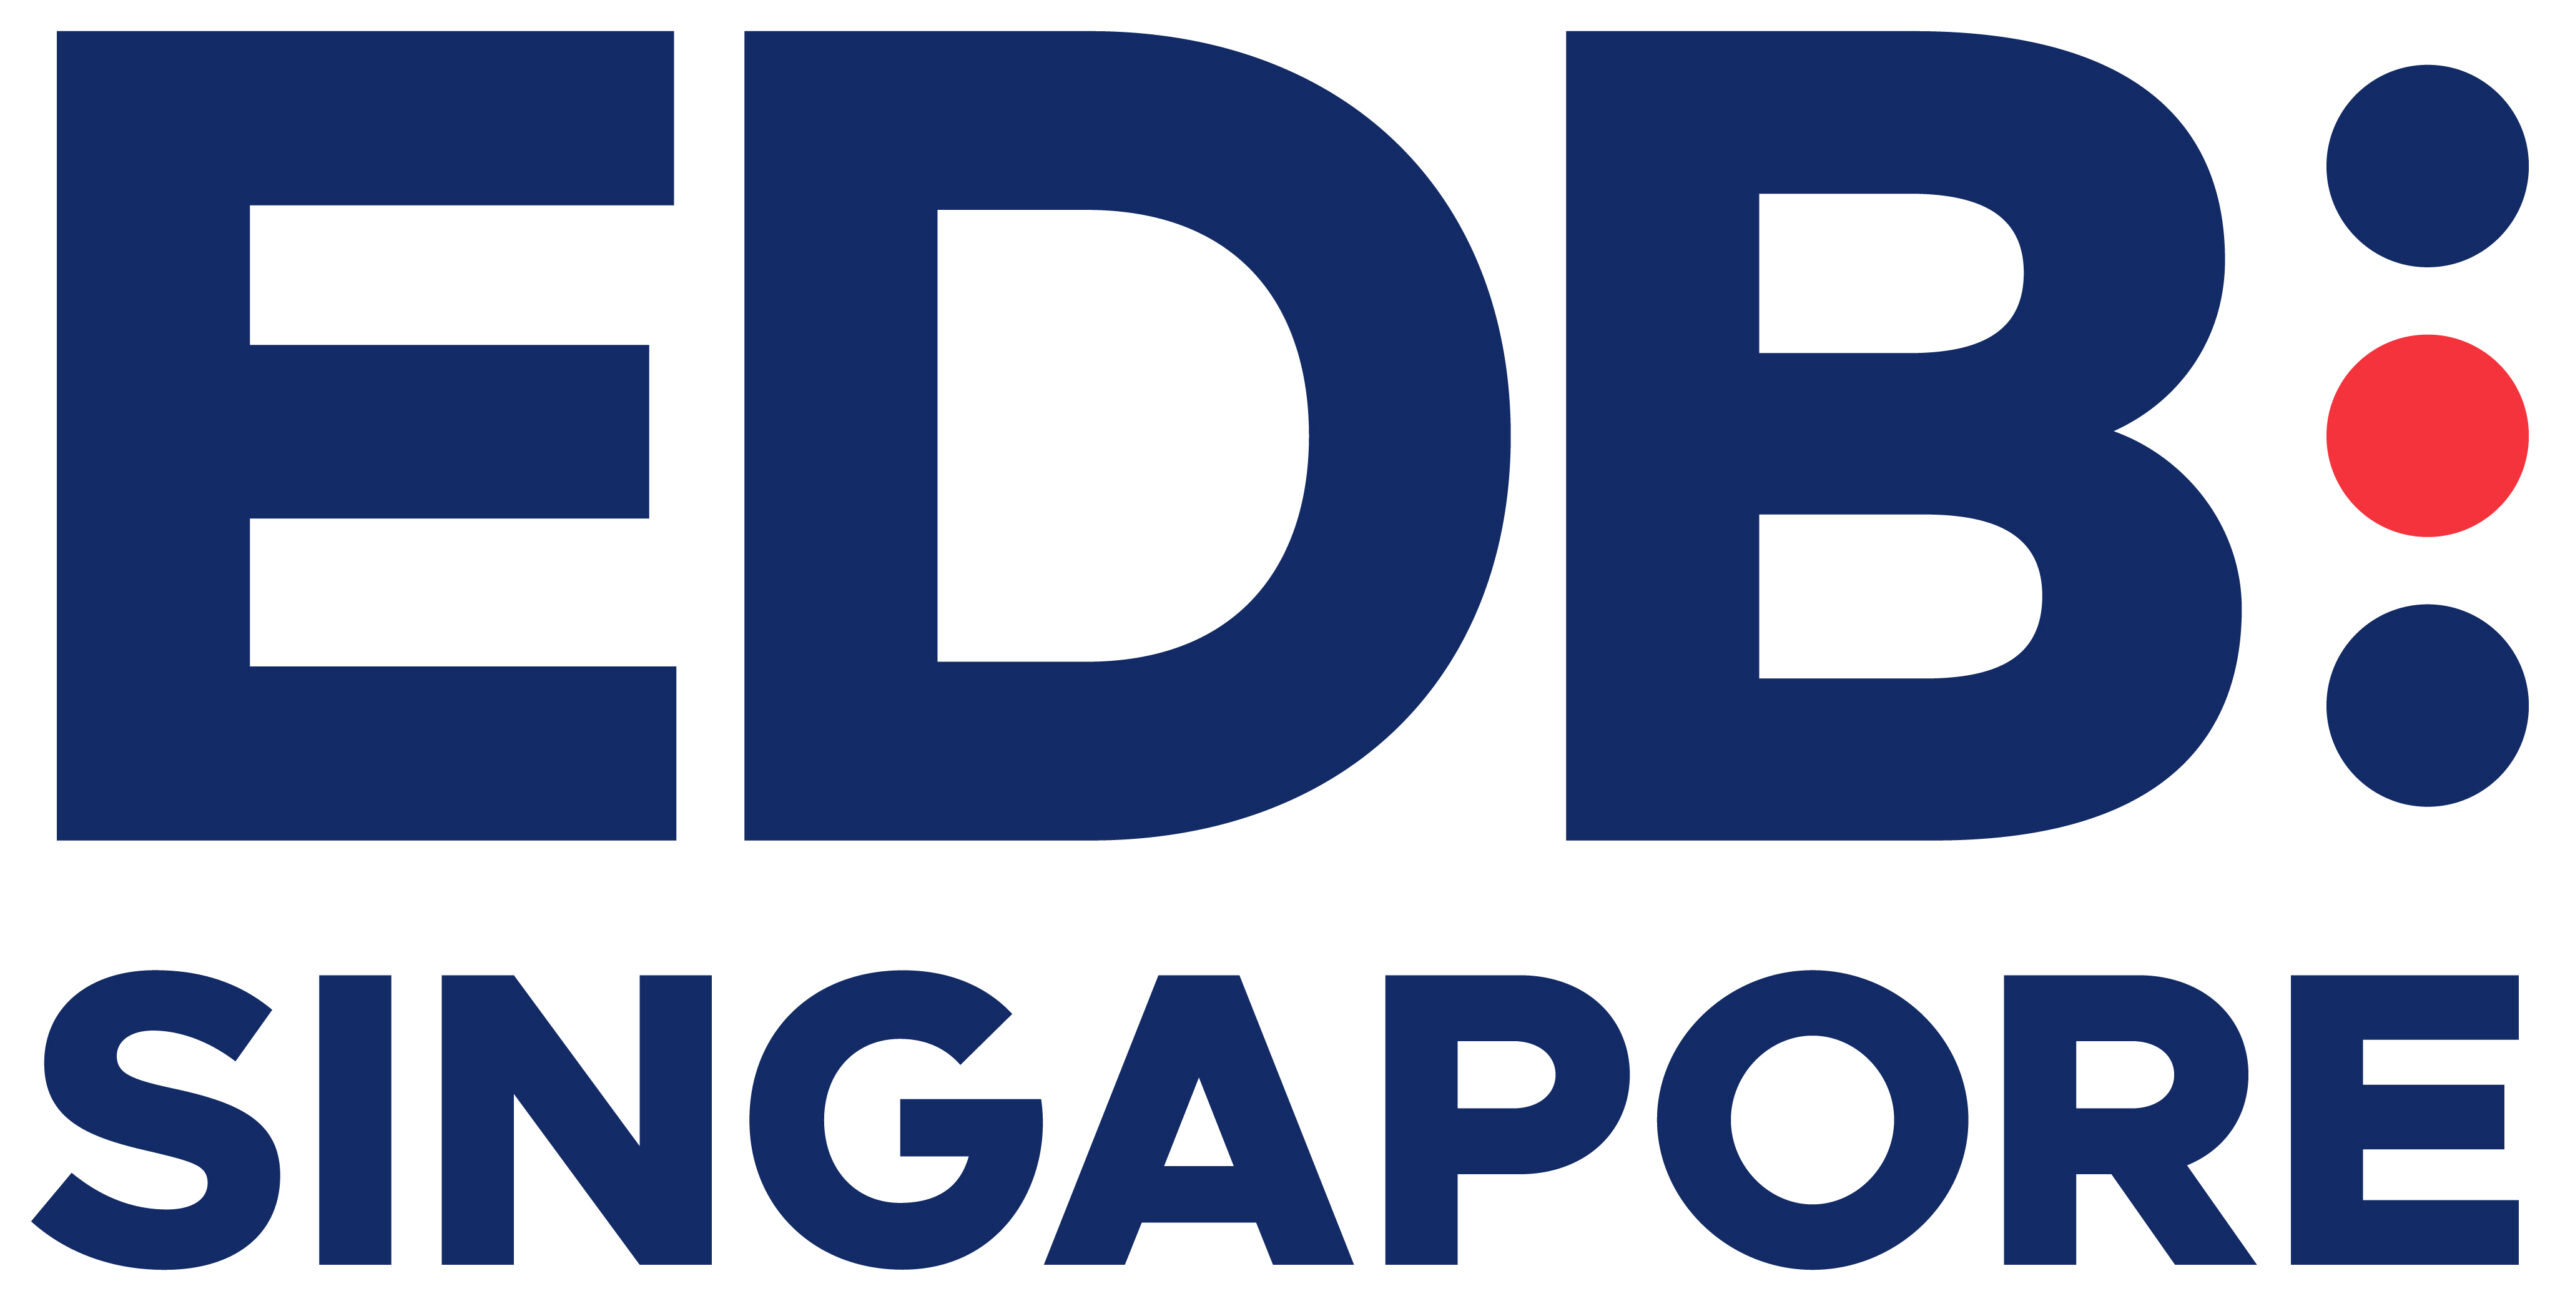 Singapore Economic Development Board